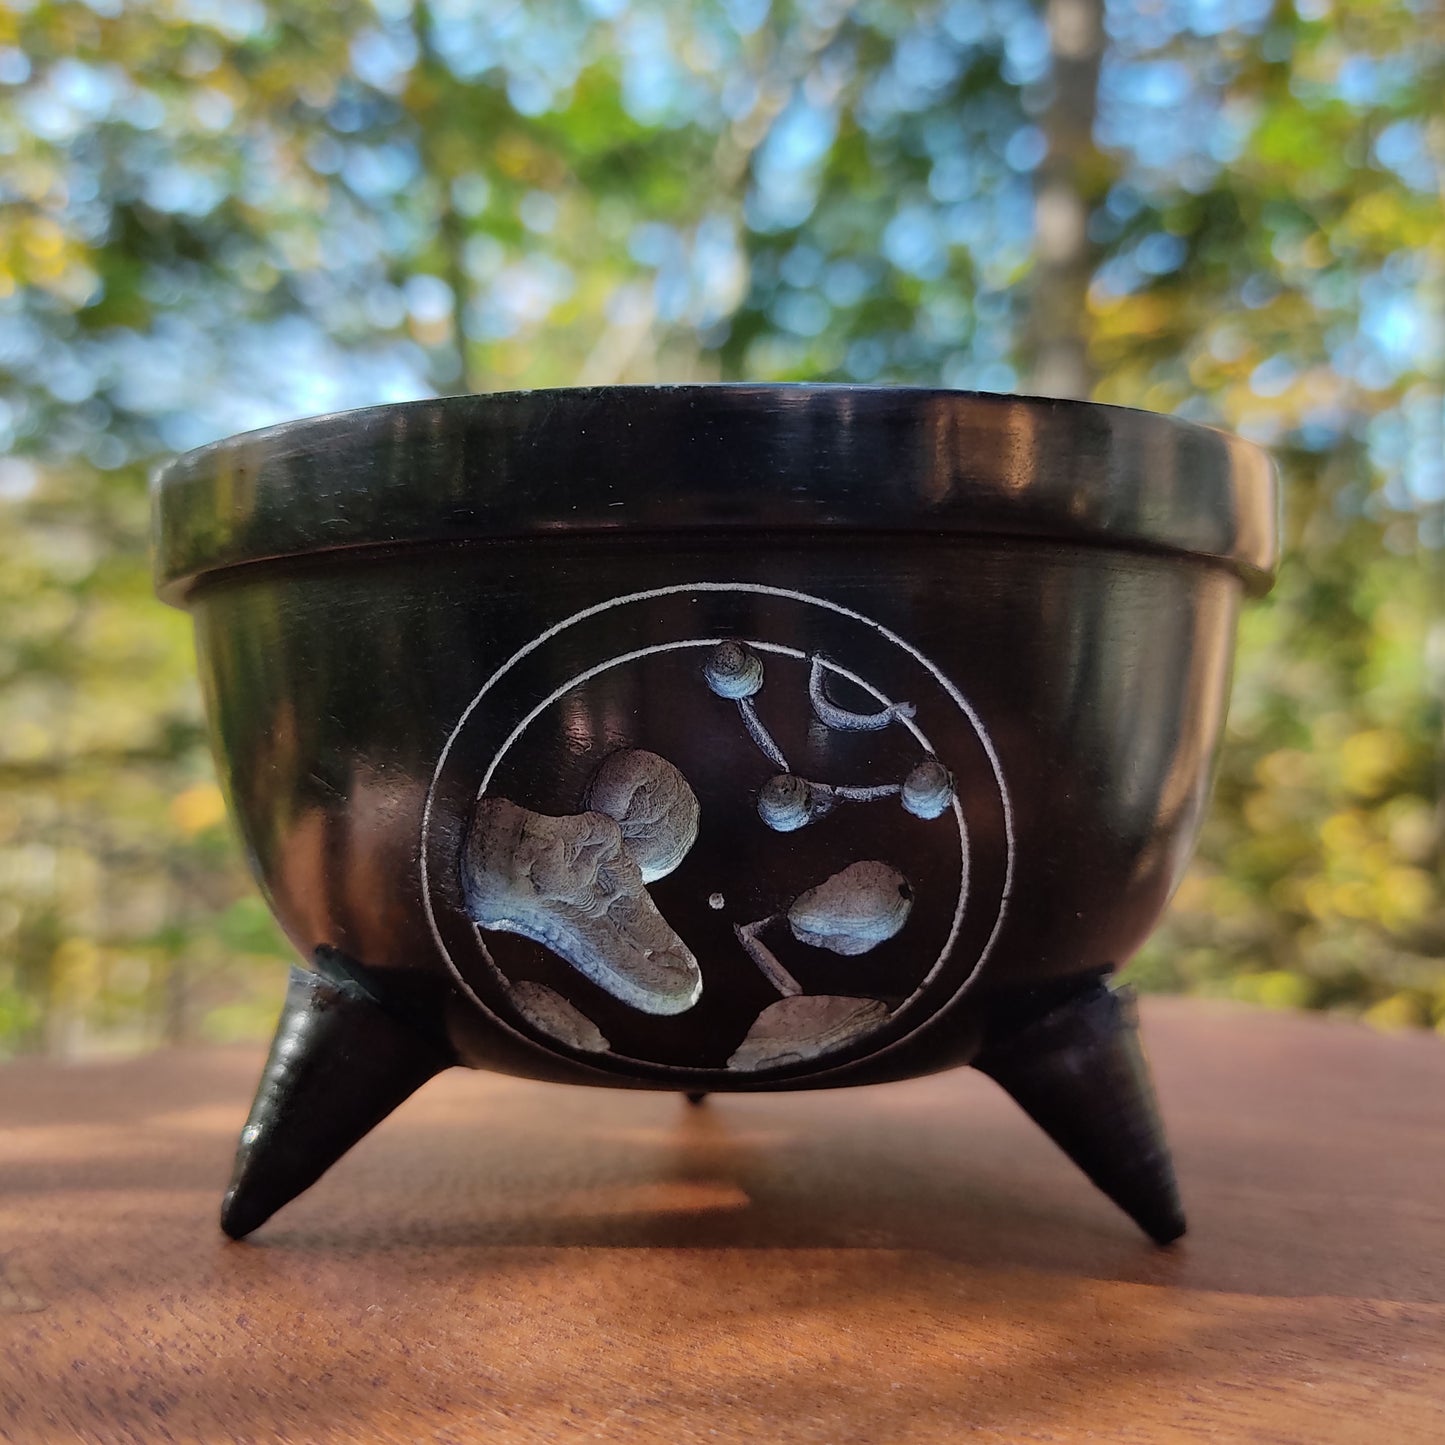 Black Om Smudge Incense Burner or Altar Offering Bowl Handmade Soapstone 4"